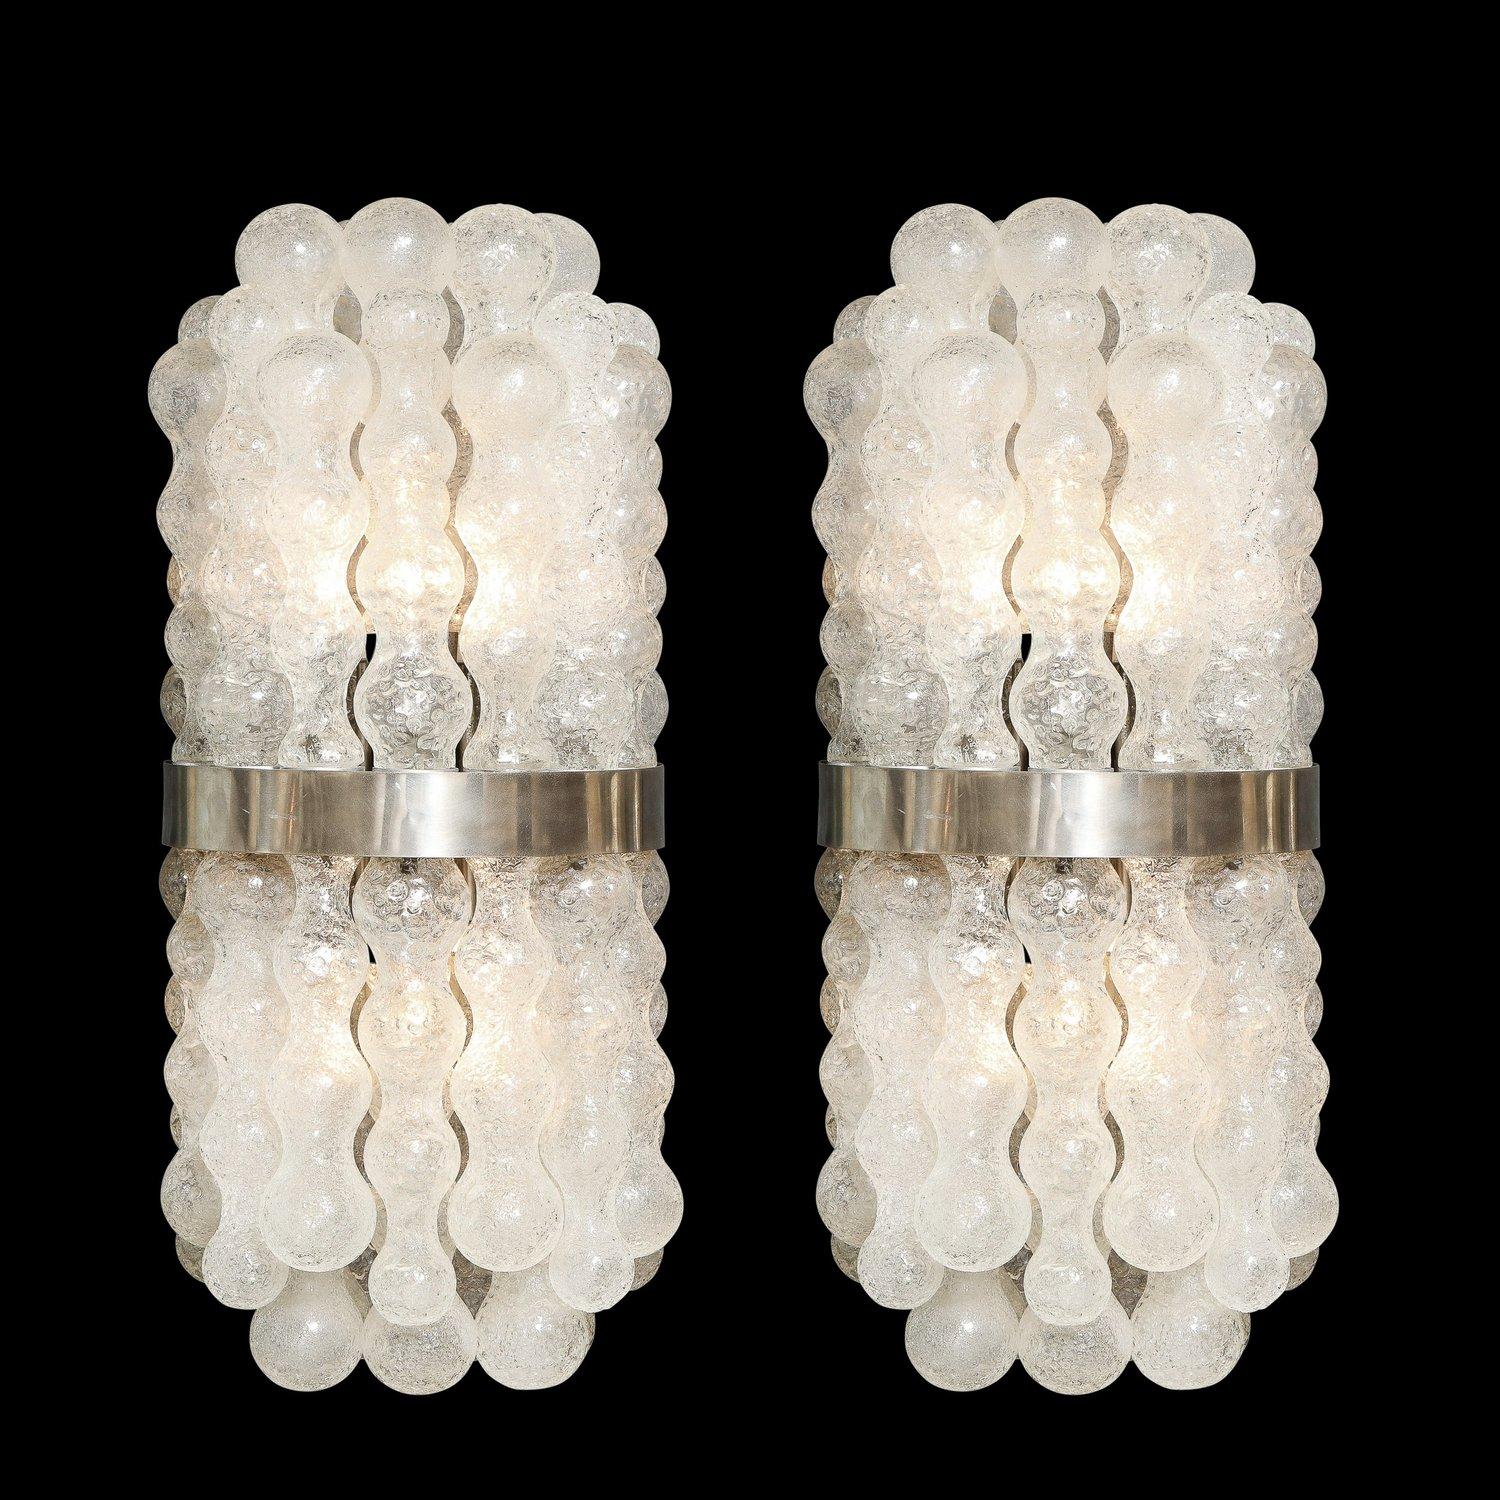 Dieses raffinierte und atemberaubende Paar Mid Century Modern-Leuchten wurde in Murano, Italien, hergestellt - der Insel vor der Küste Venedigs, die seit Jahrhunderten für ihre hervorragende Glasproduktion bekannt ist. Die gewölbten Körper bestehen